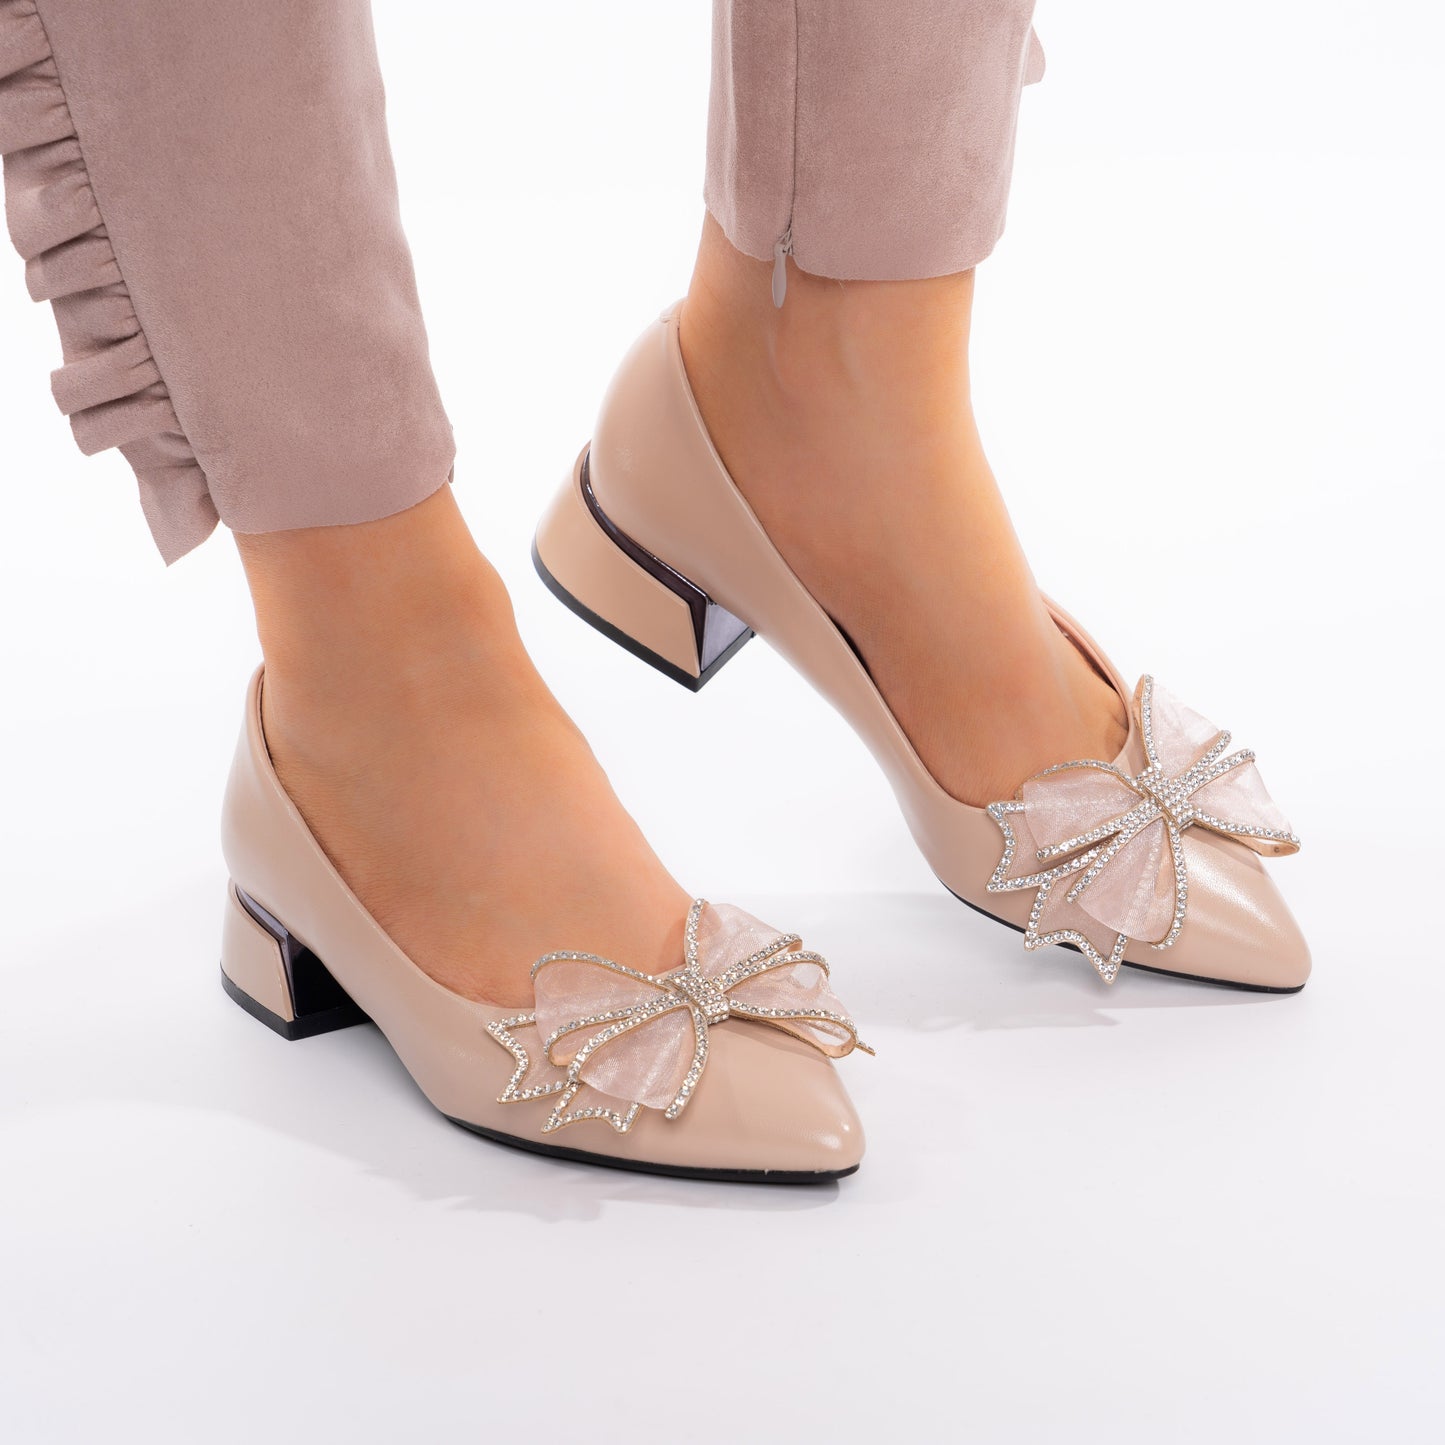 Pantofi Eleganti Cu Toc Mic Accesorizati cu Fundita - Greta Bej